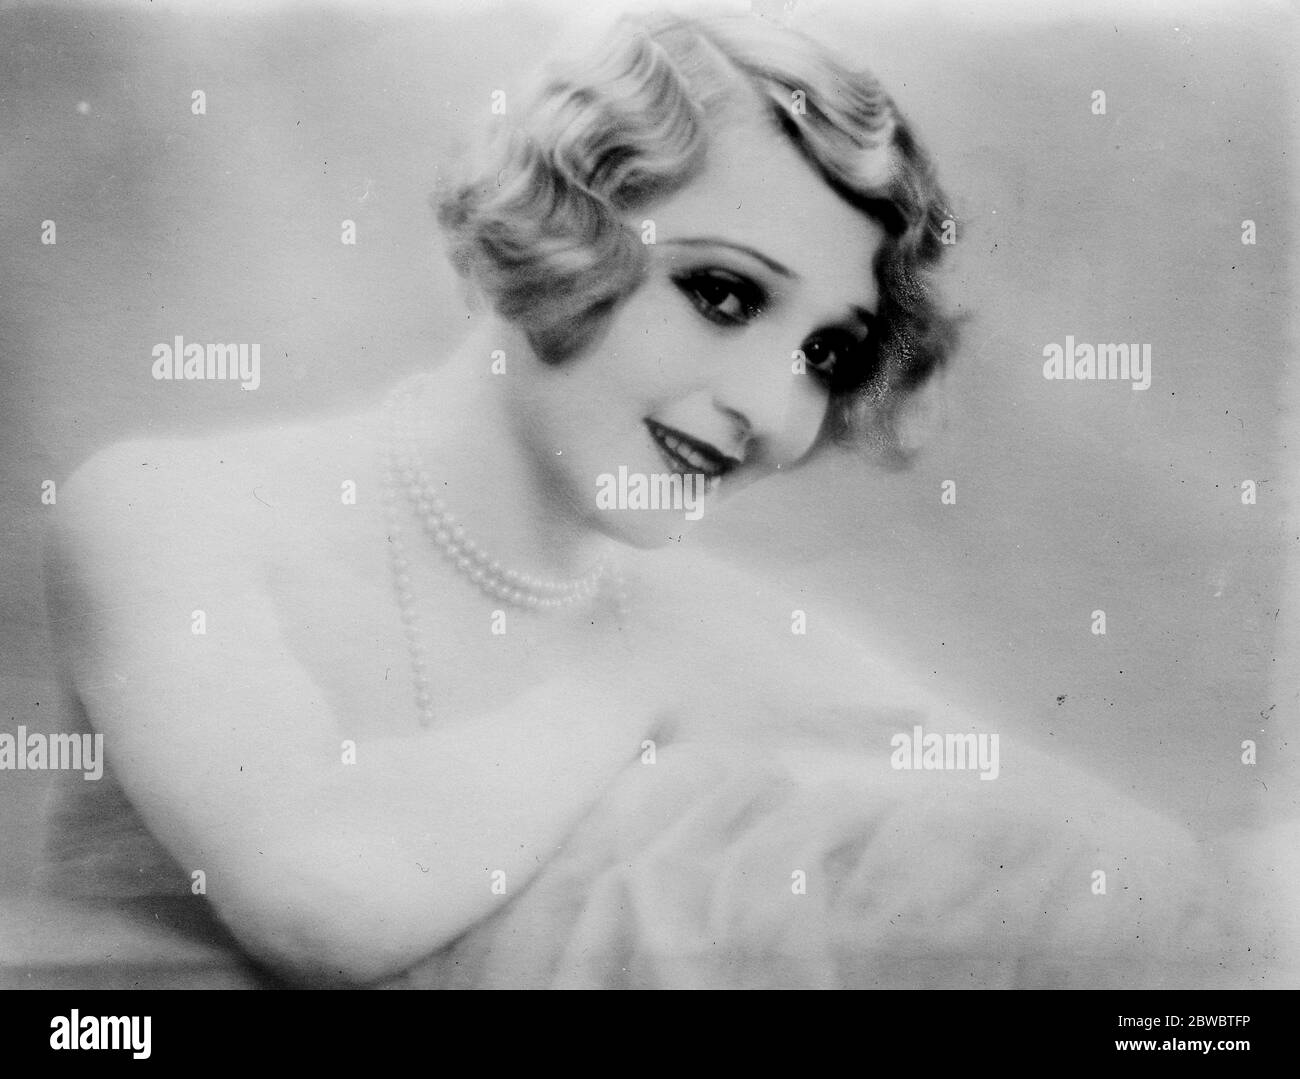 England 's schönsten Mädchen auf der Bühne. Miss Madge Bellamy , die zum schönsten Mädchen auf der französischen Bühne gewählt wurde. 24 Juli 1926 Stockfoto